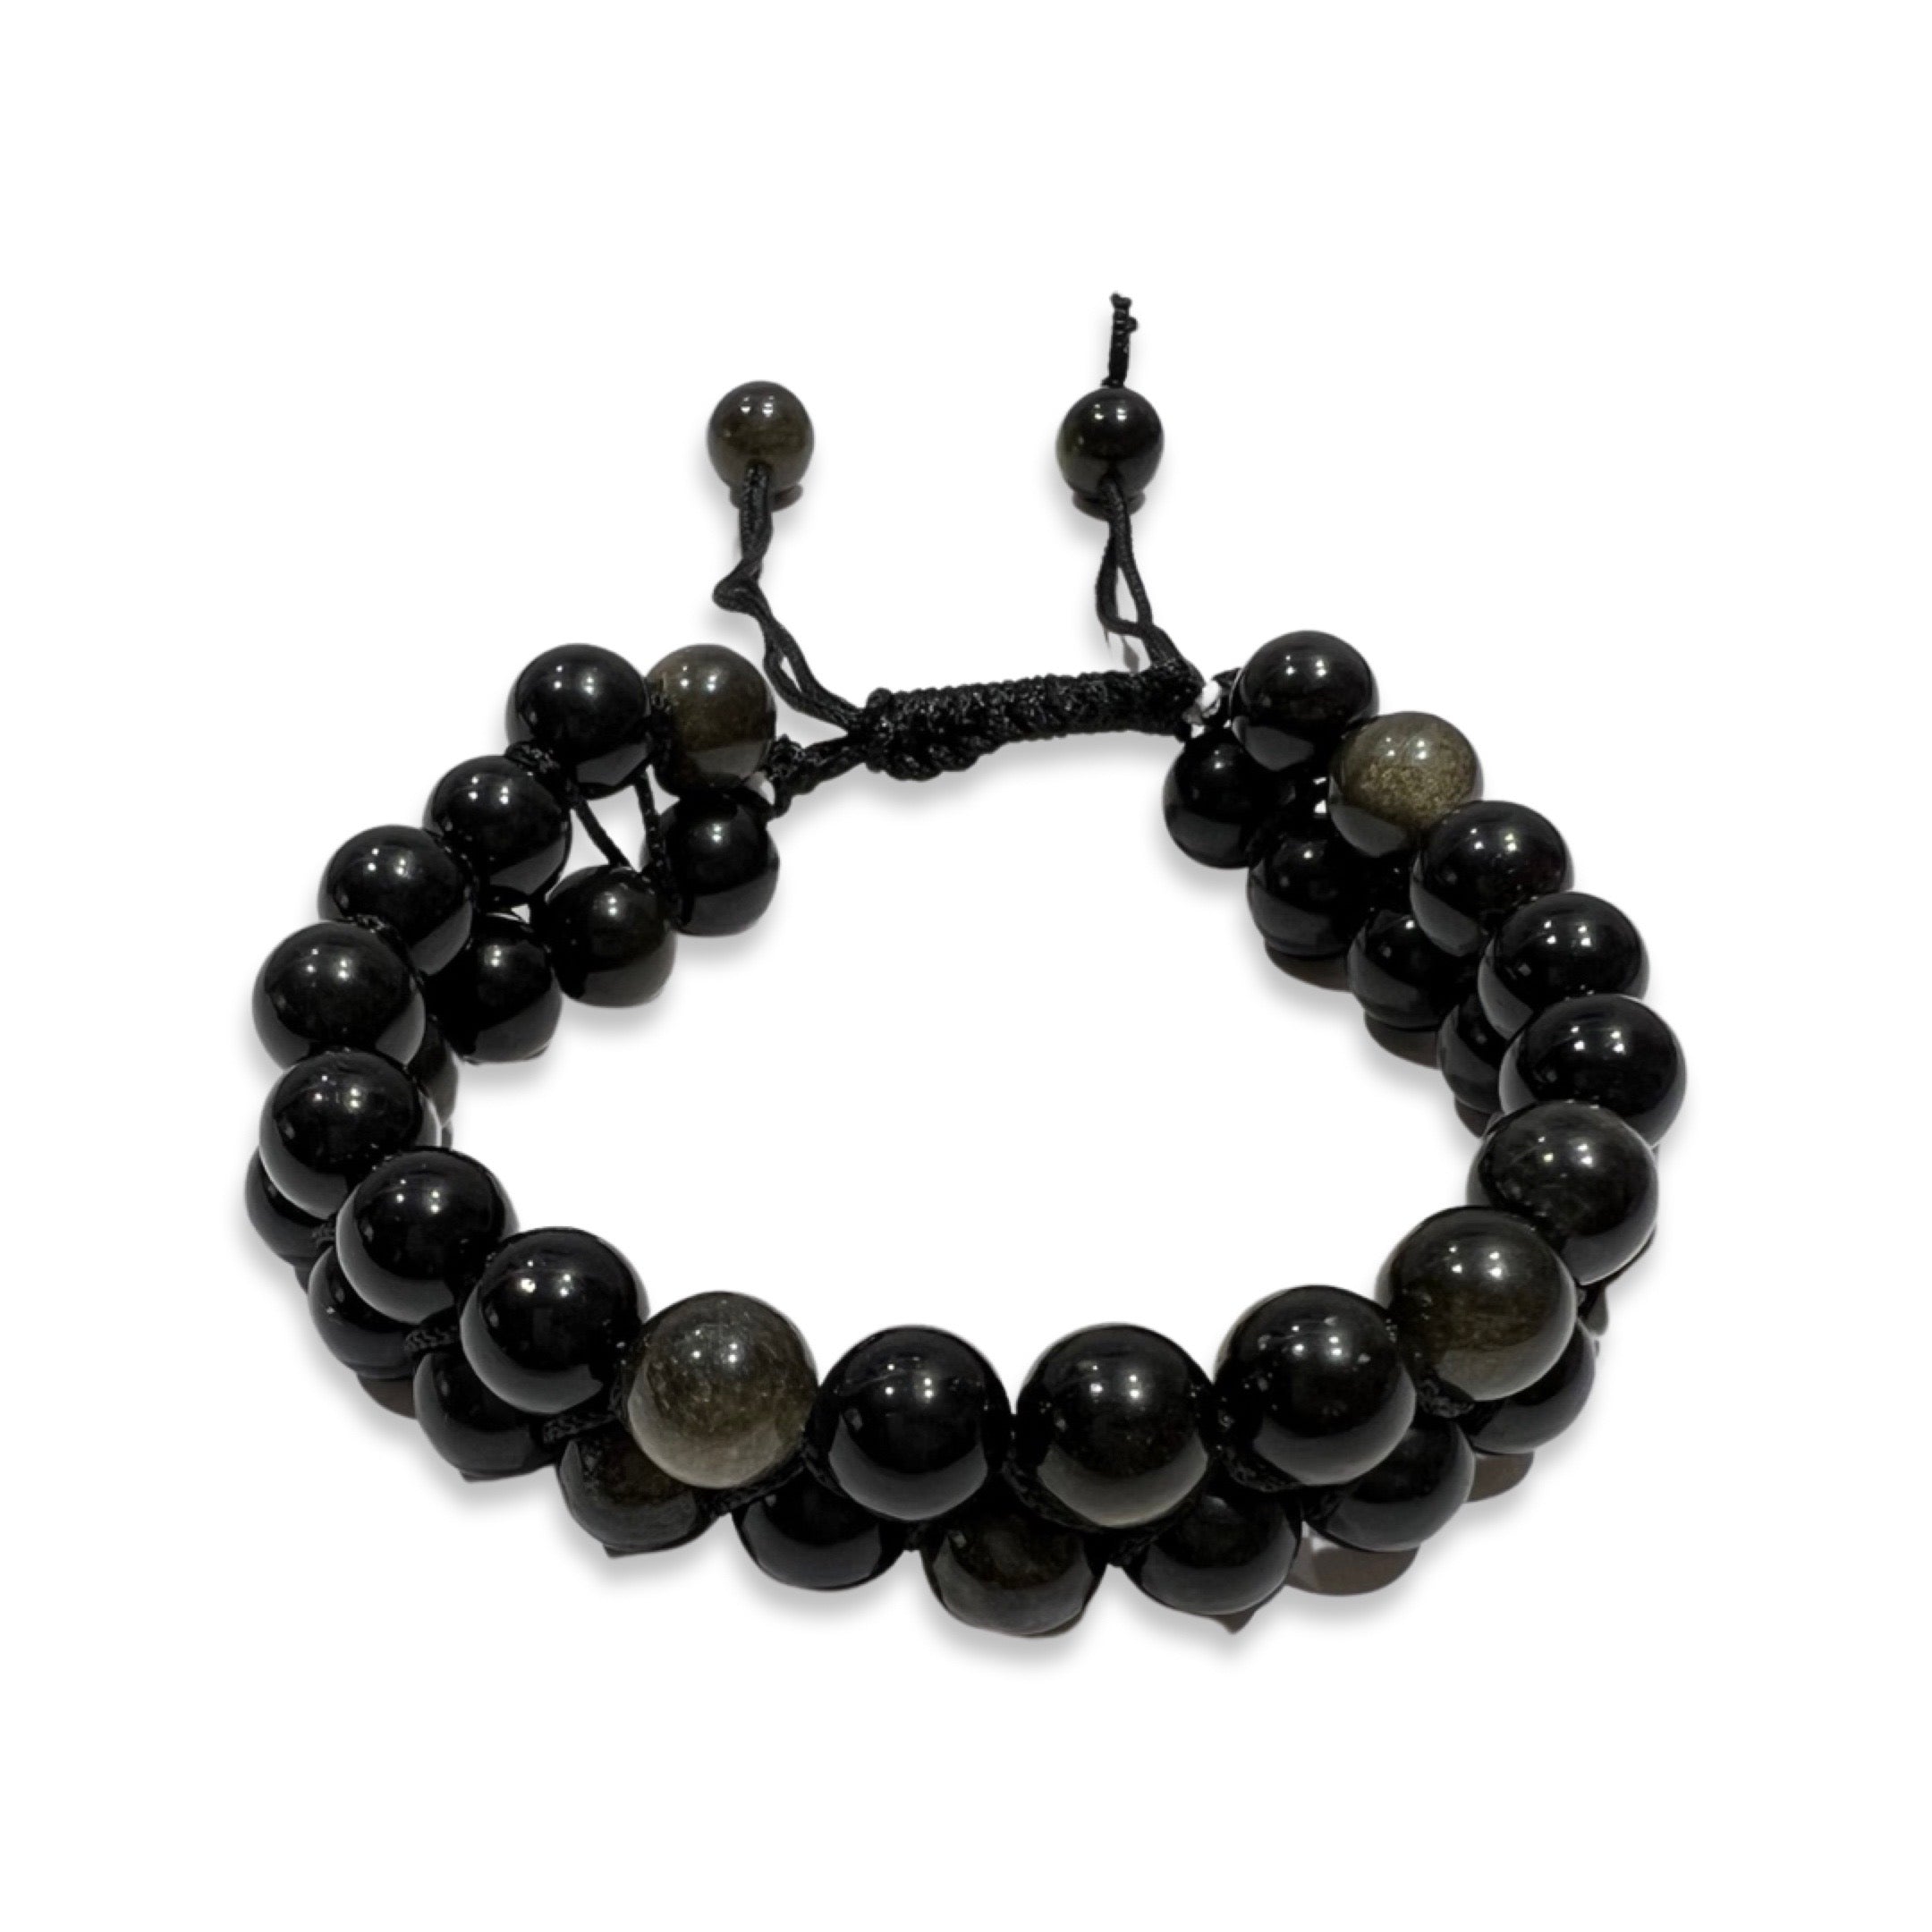 Feng Shui Black Obsidian Bracelets for sale in Miami, Florida | Facebook  Marketplace | Facebook